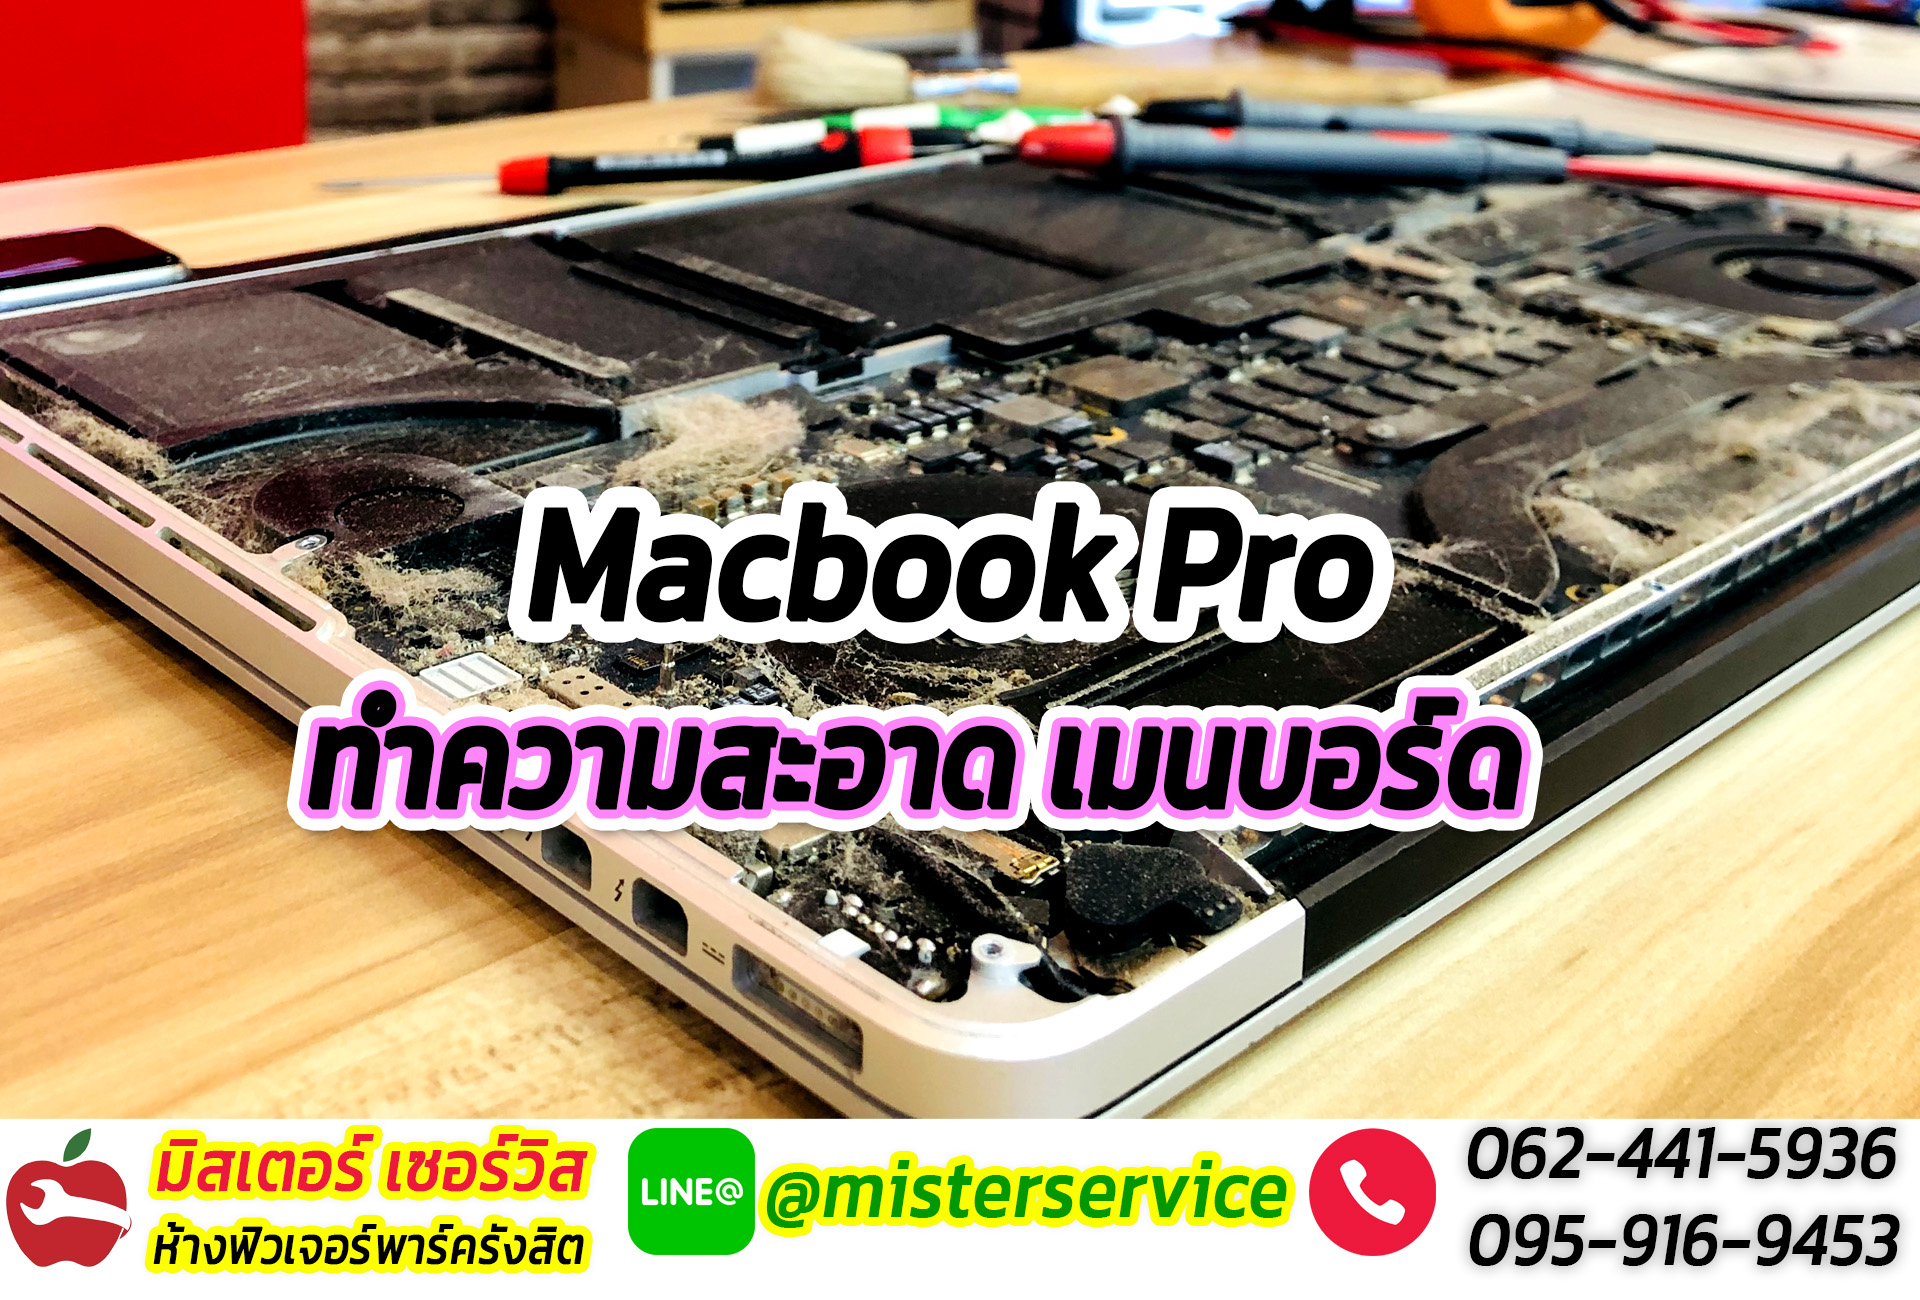 ซ่อมเมนบอร์ด macbook ฟิวเจอร์รังสิต ปทุมธานี